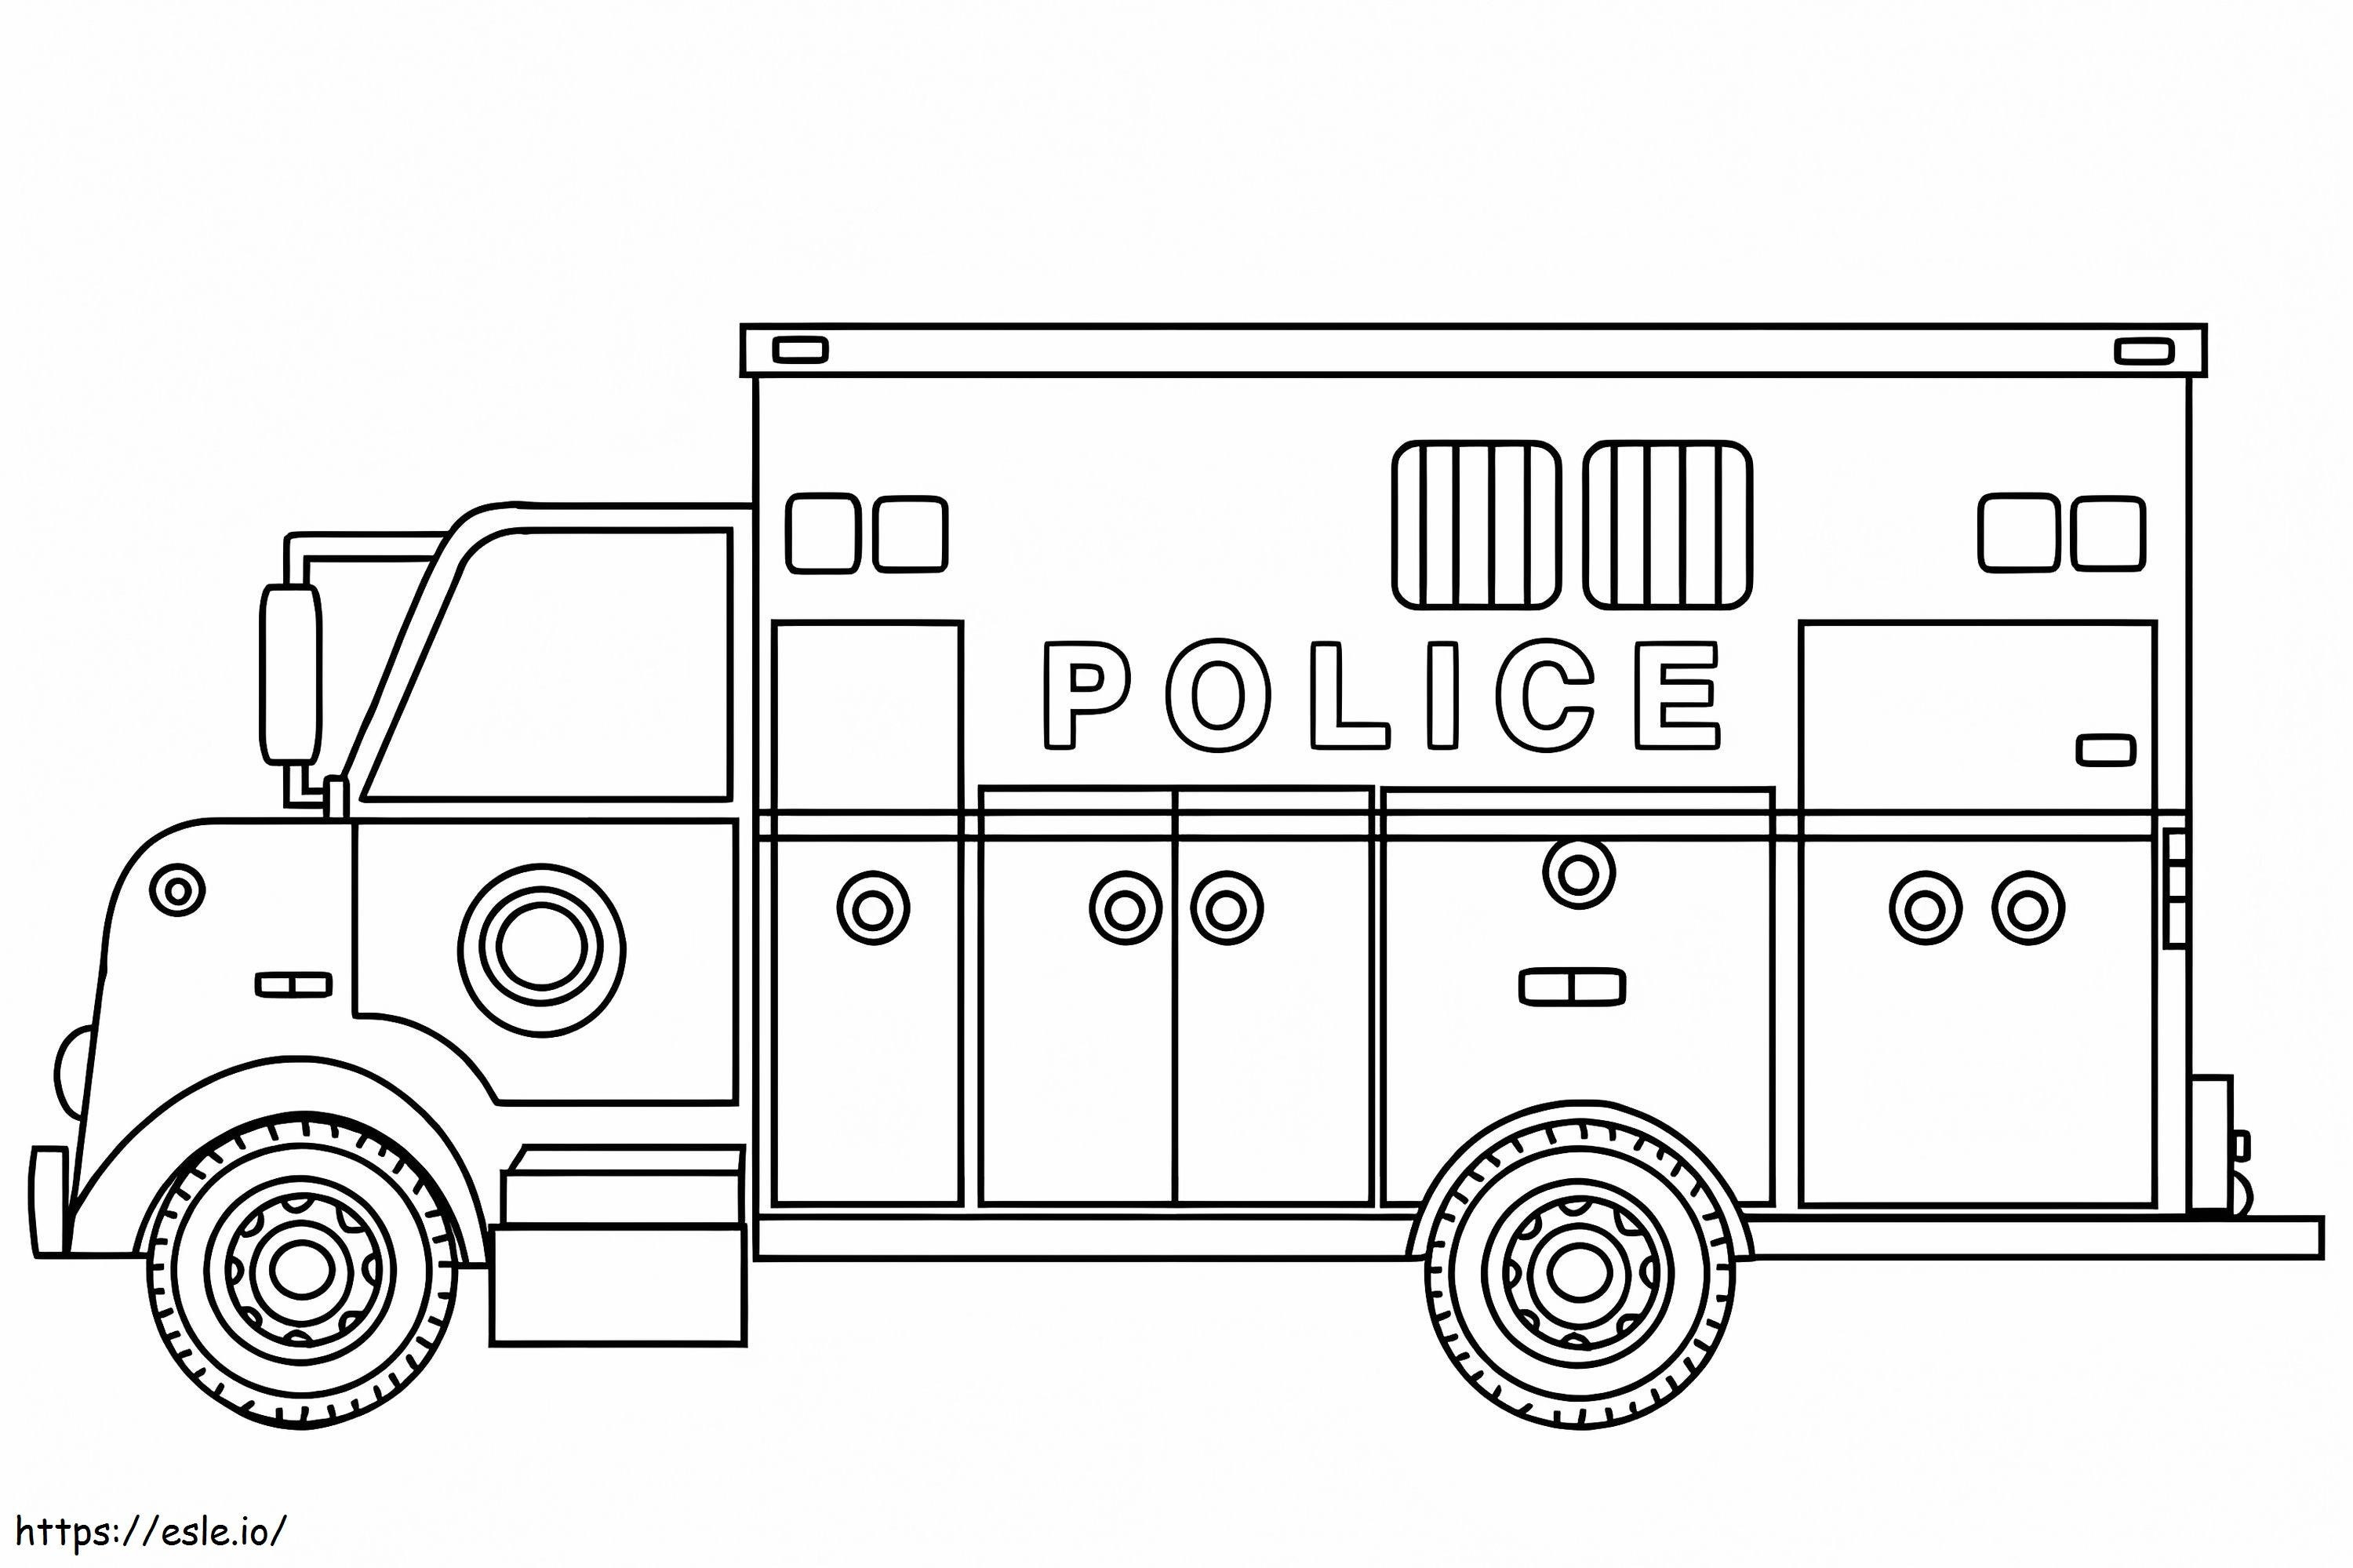 Polizeiwagen ausmalbilder